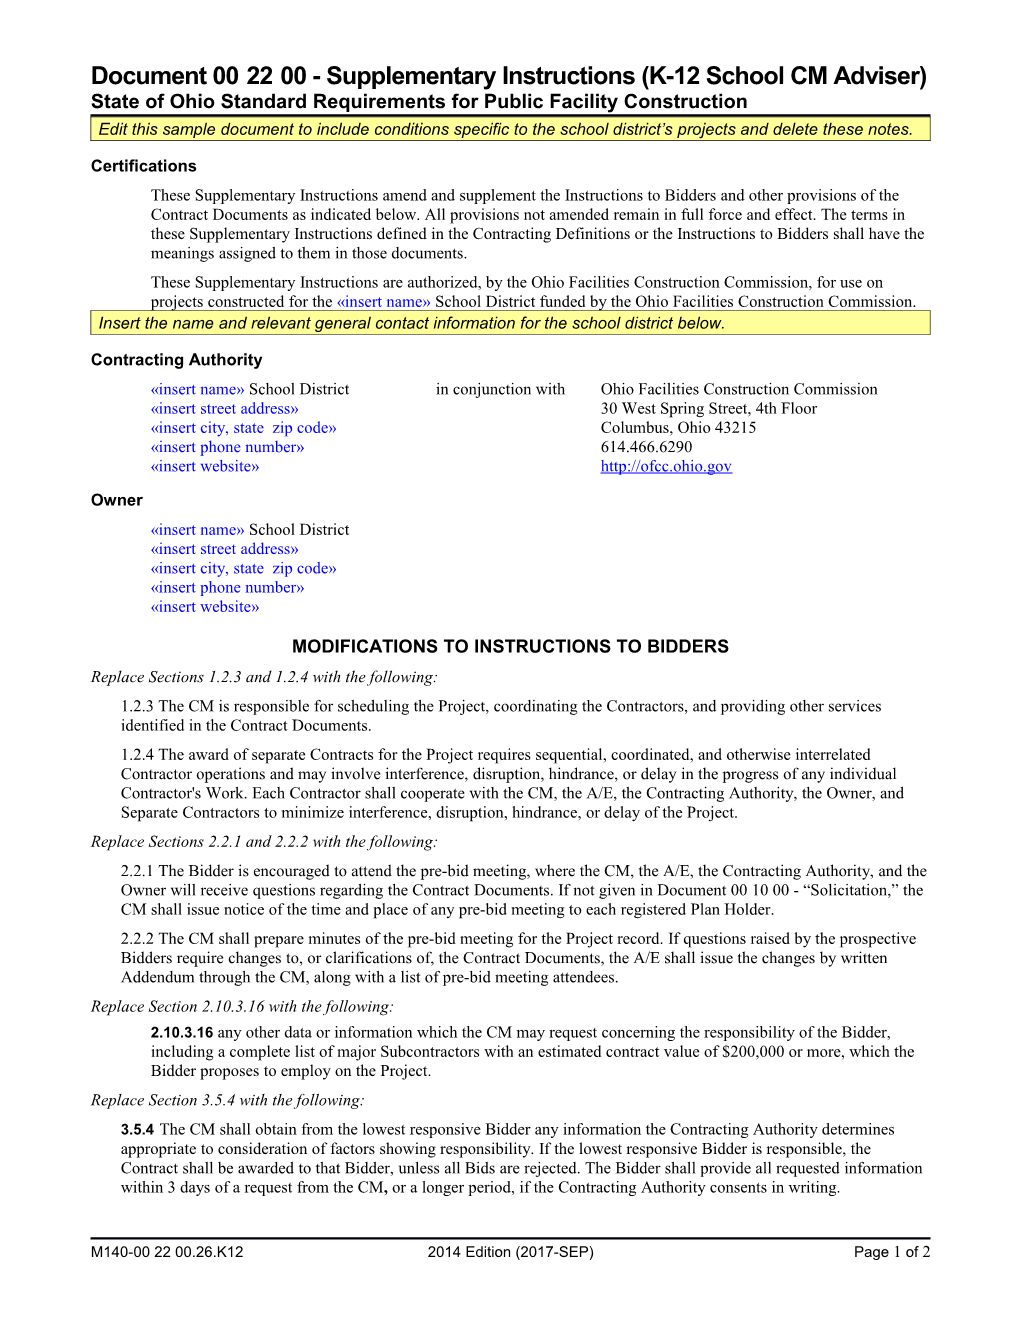 Document 002200Supplementary Instructions (K-12 School CM Adviser)